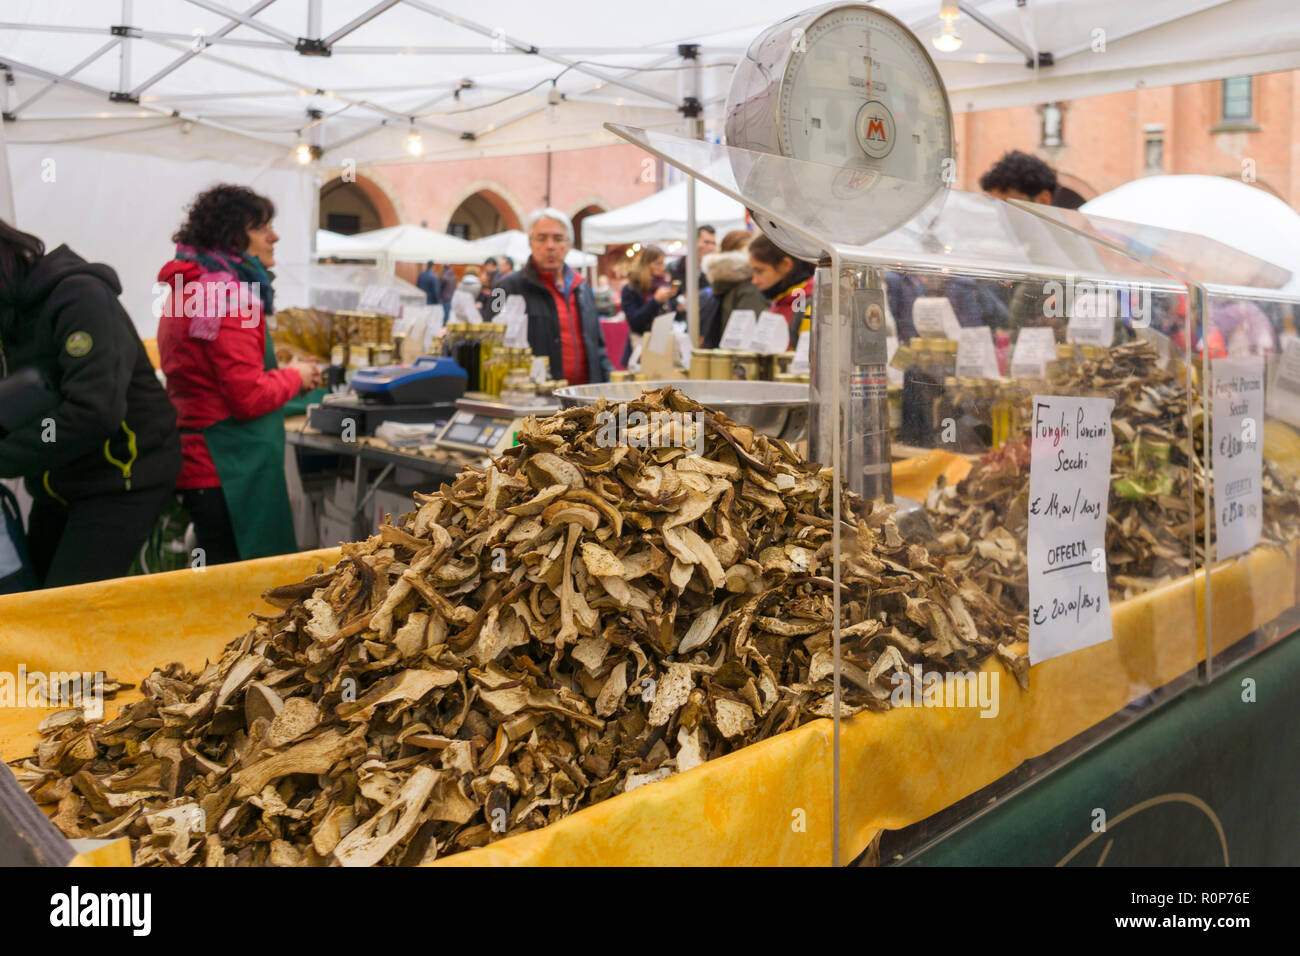 Alba, Italie - 4 novembre 2018 : les touristes à la truffe champignons juste et de la rue du marché d'Alba, dans le Piémont. Banque D'Images